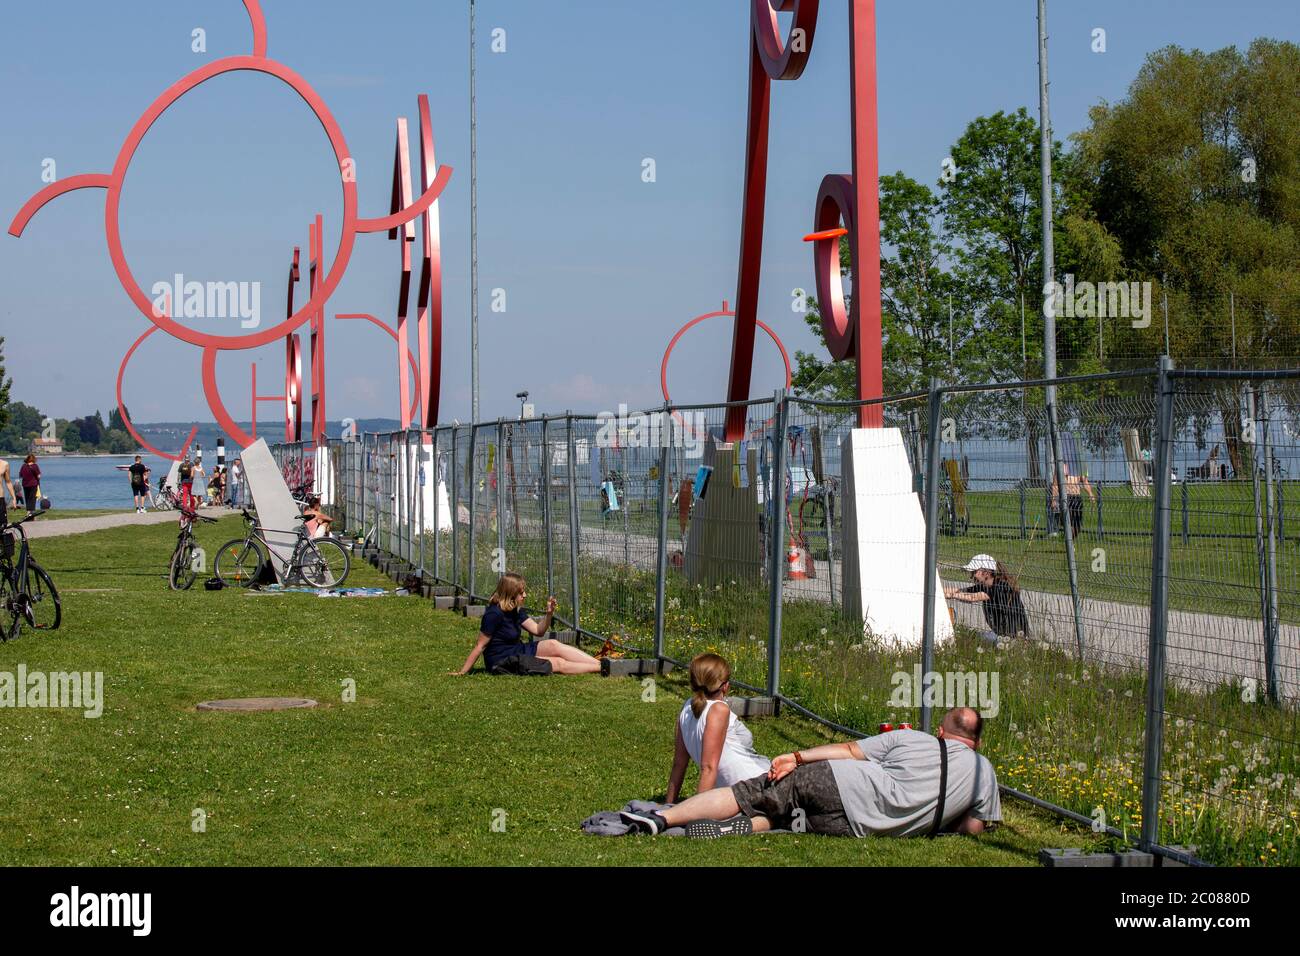 Wegen der Ausbreitung des Corona-Virus haben die Schweiz und Deutschland ihre Grenzen geschlossen. Nun findet die Konversation am Grenzzaun statt. Kon Stock Photo